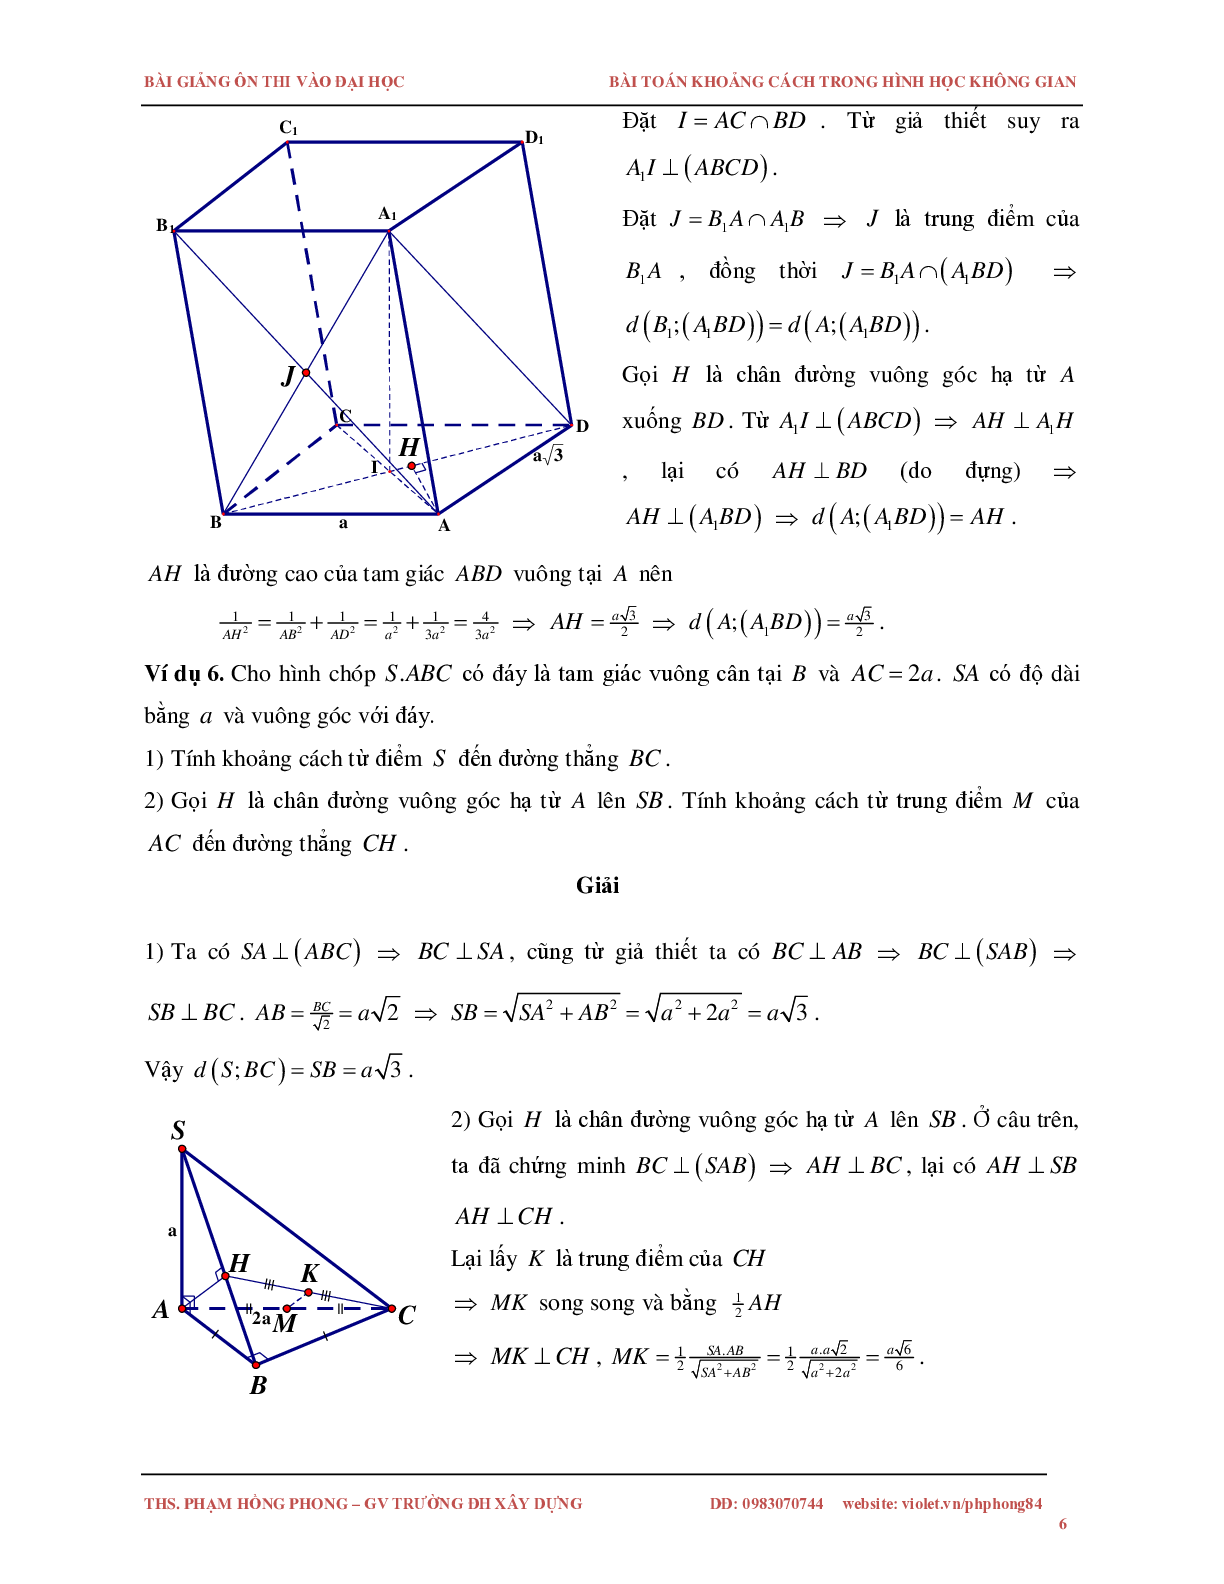 Bài toán về khoảng cách trong không gian (trang 6)